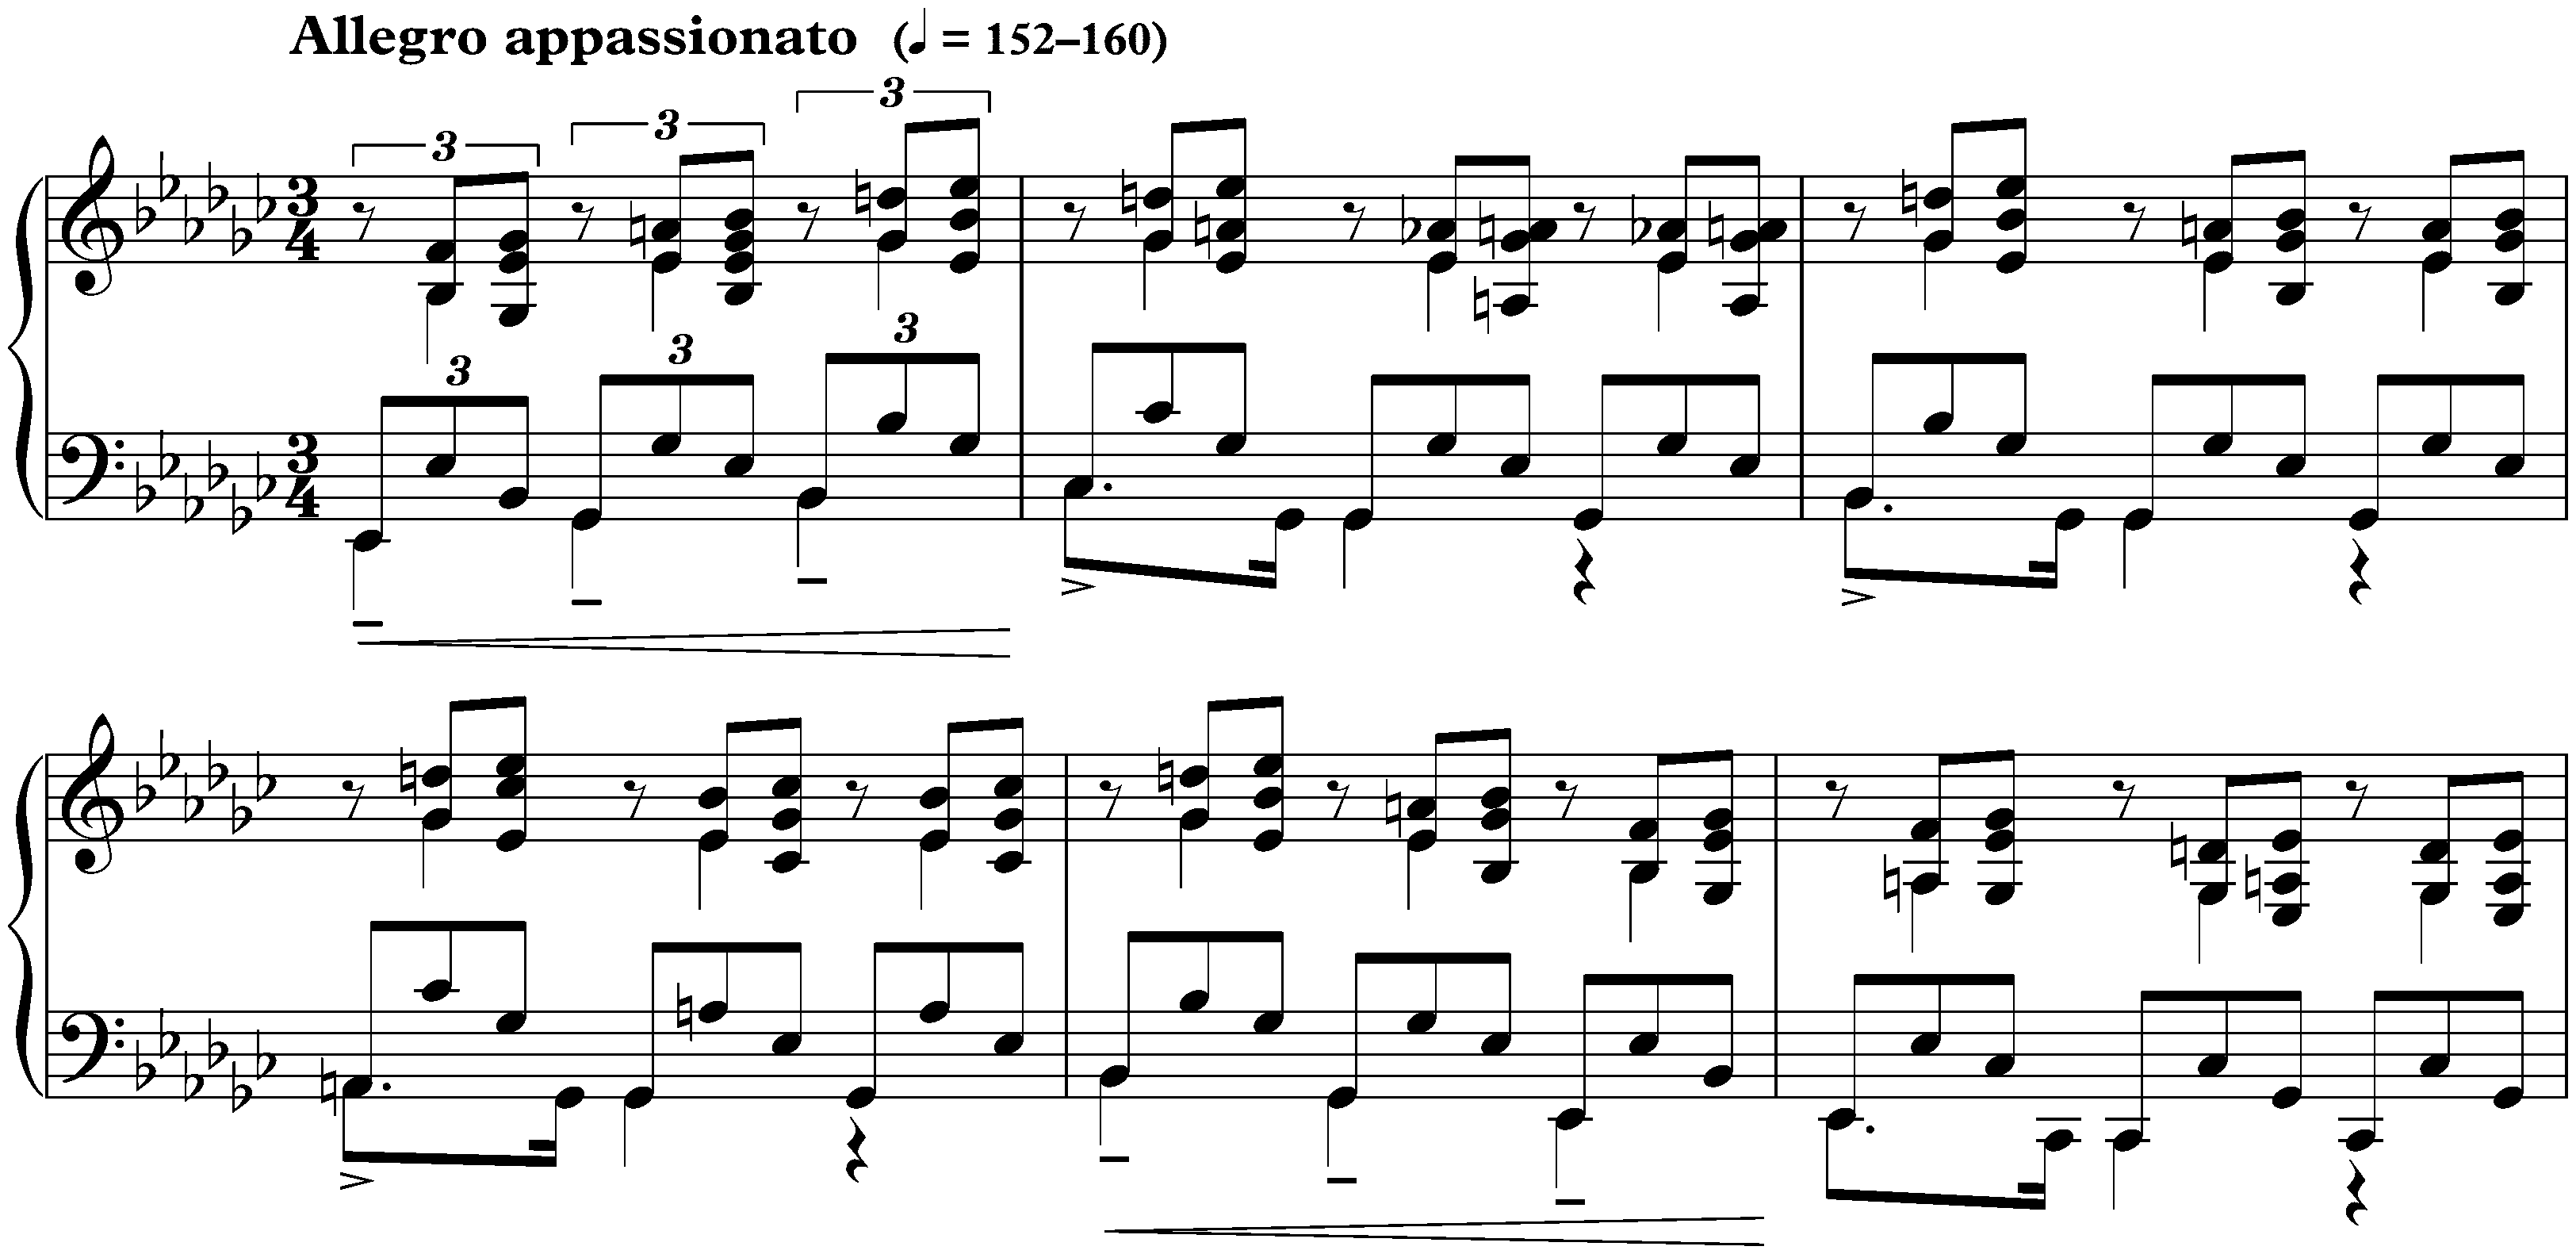 Allegro appassionato in E-flat minor, op. 4